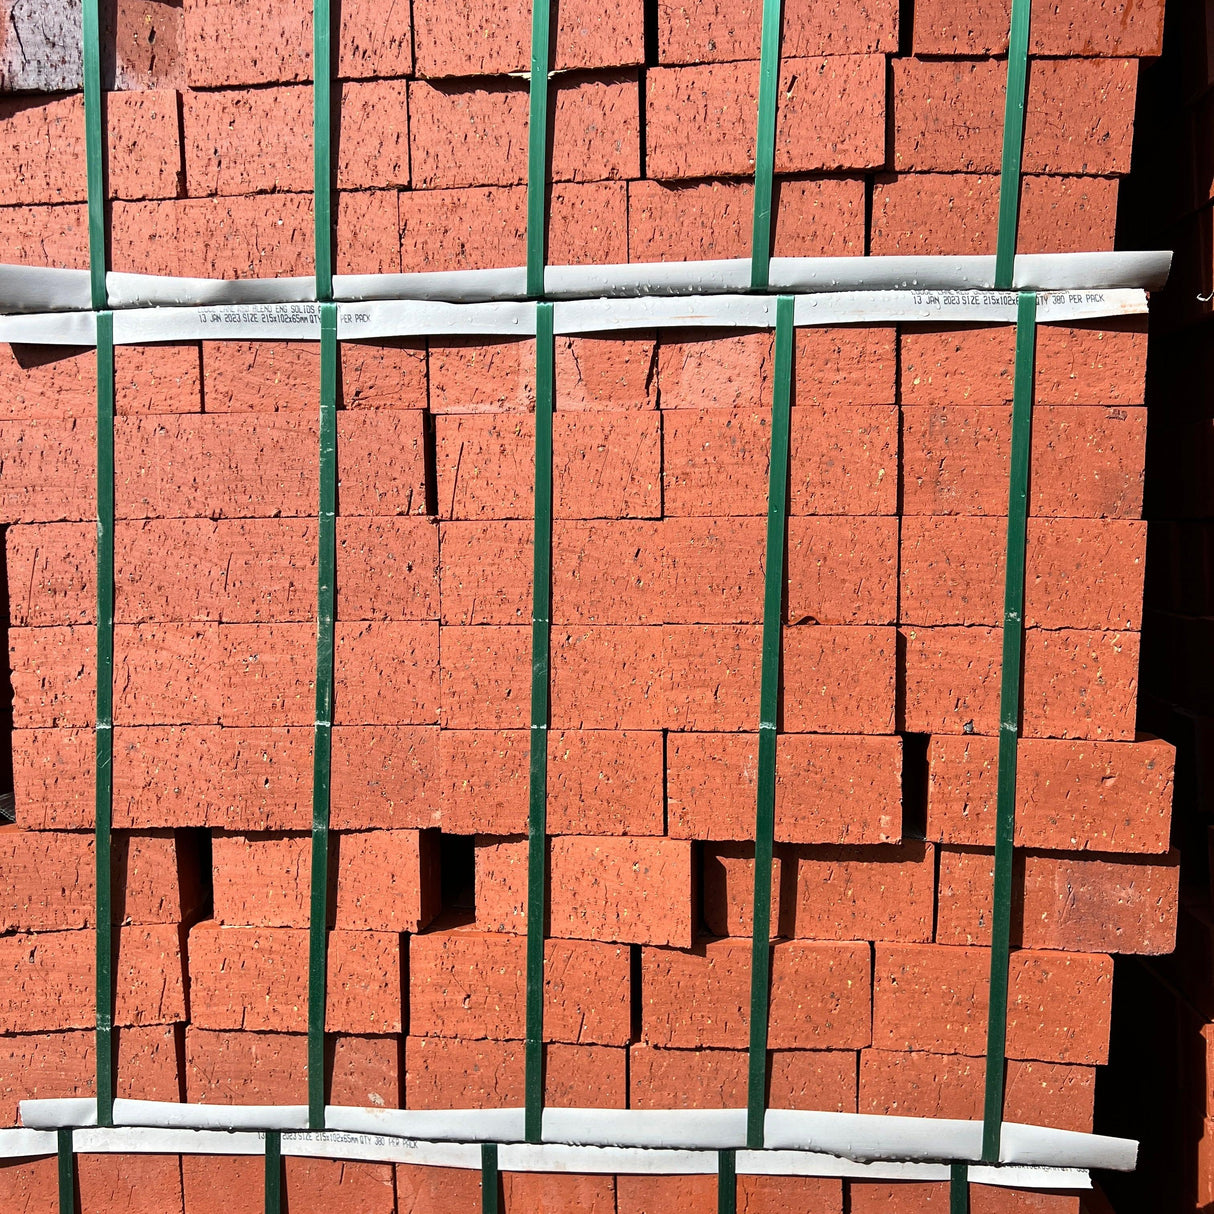 65mm Clay Engineering Brick - Reclaimed Brick Company